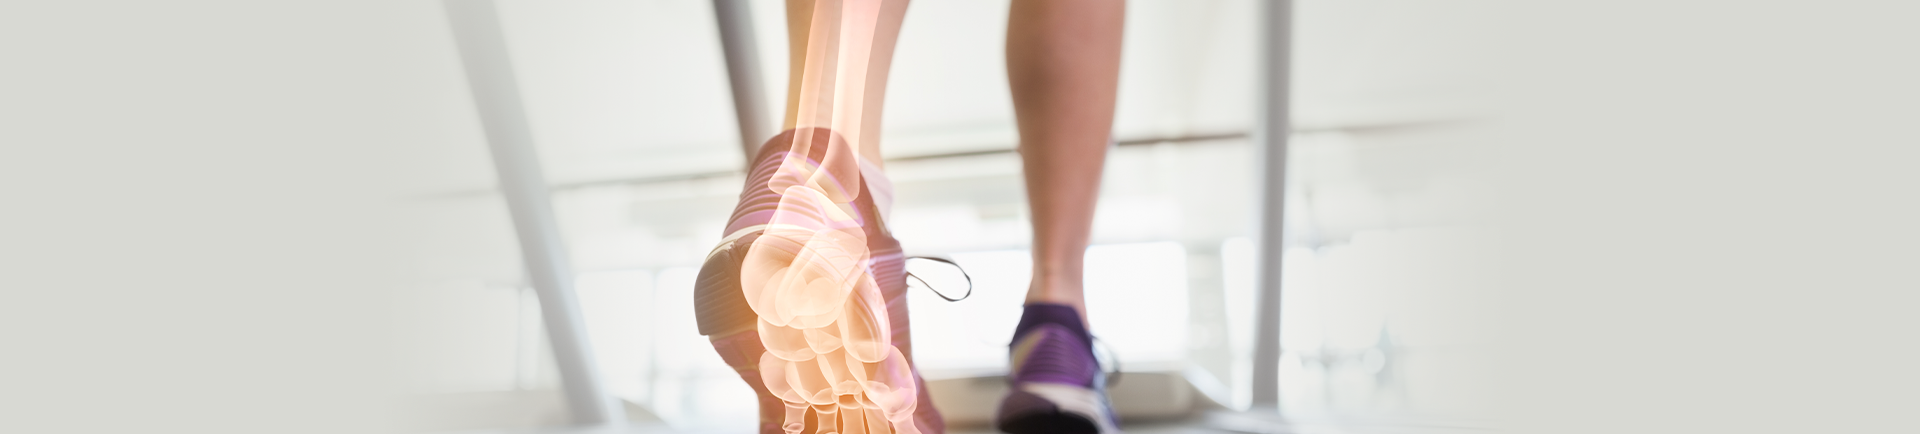 foot X-ray on treadmill